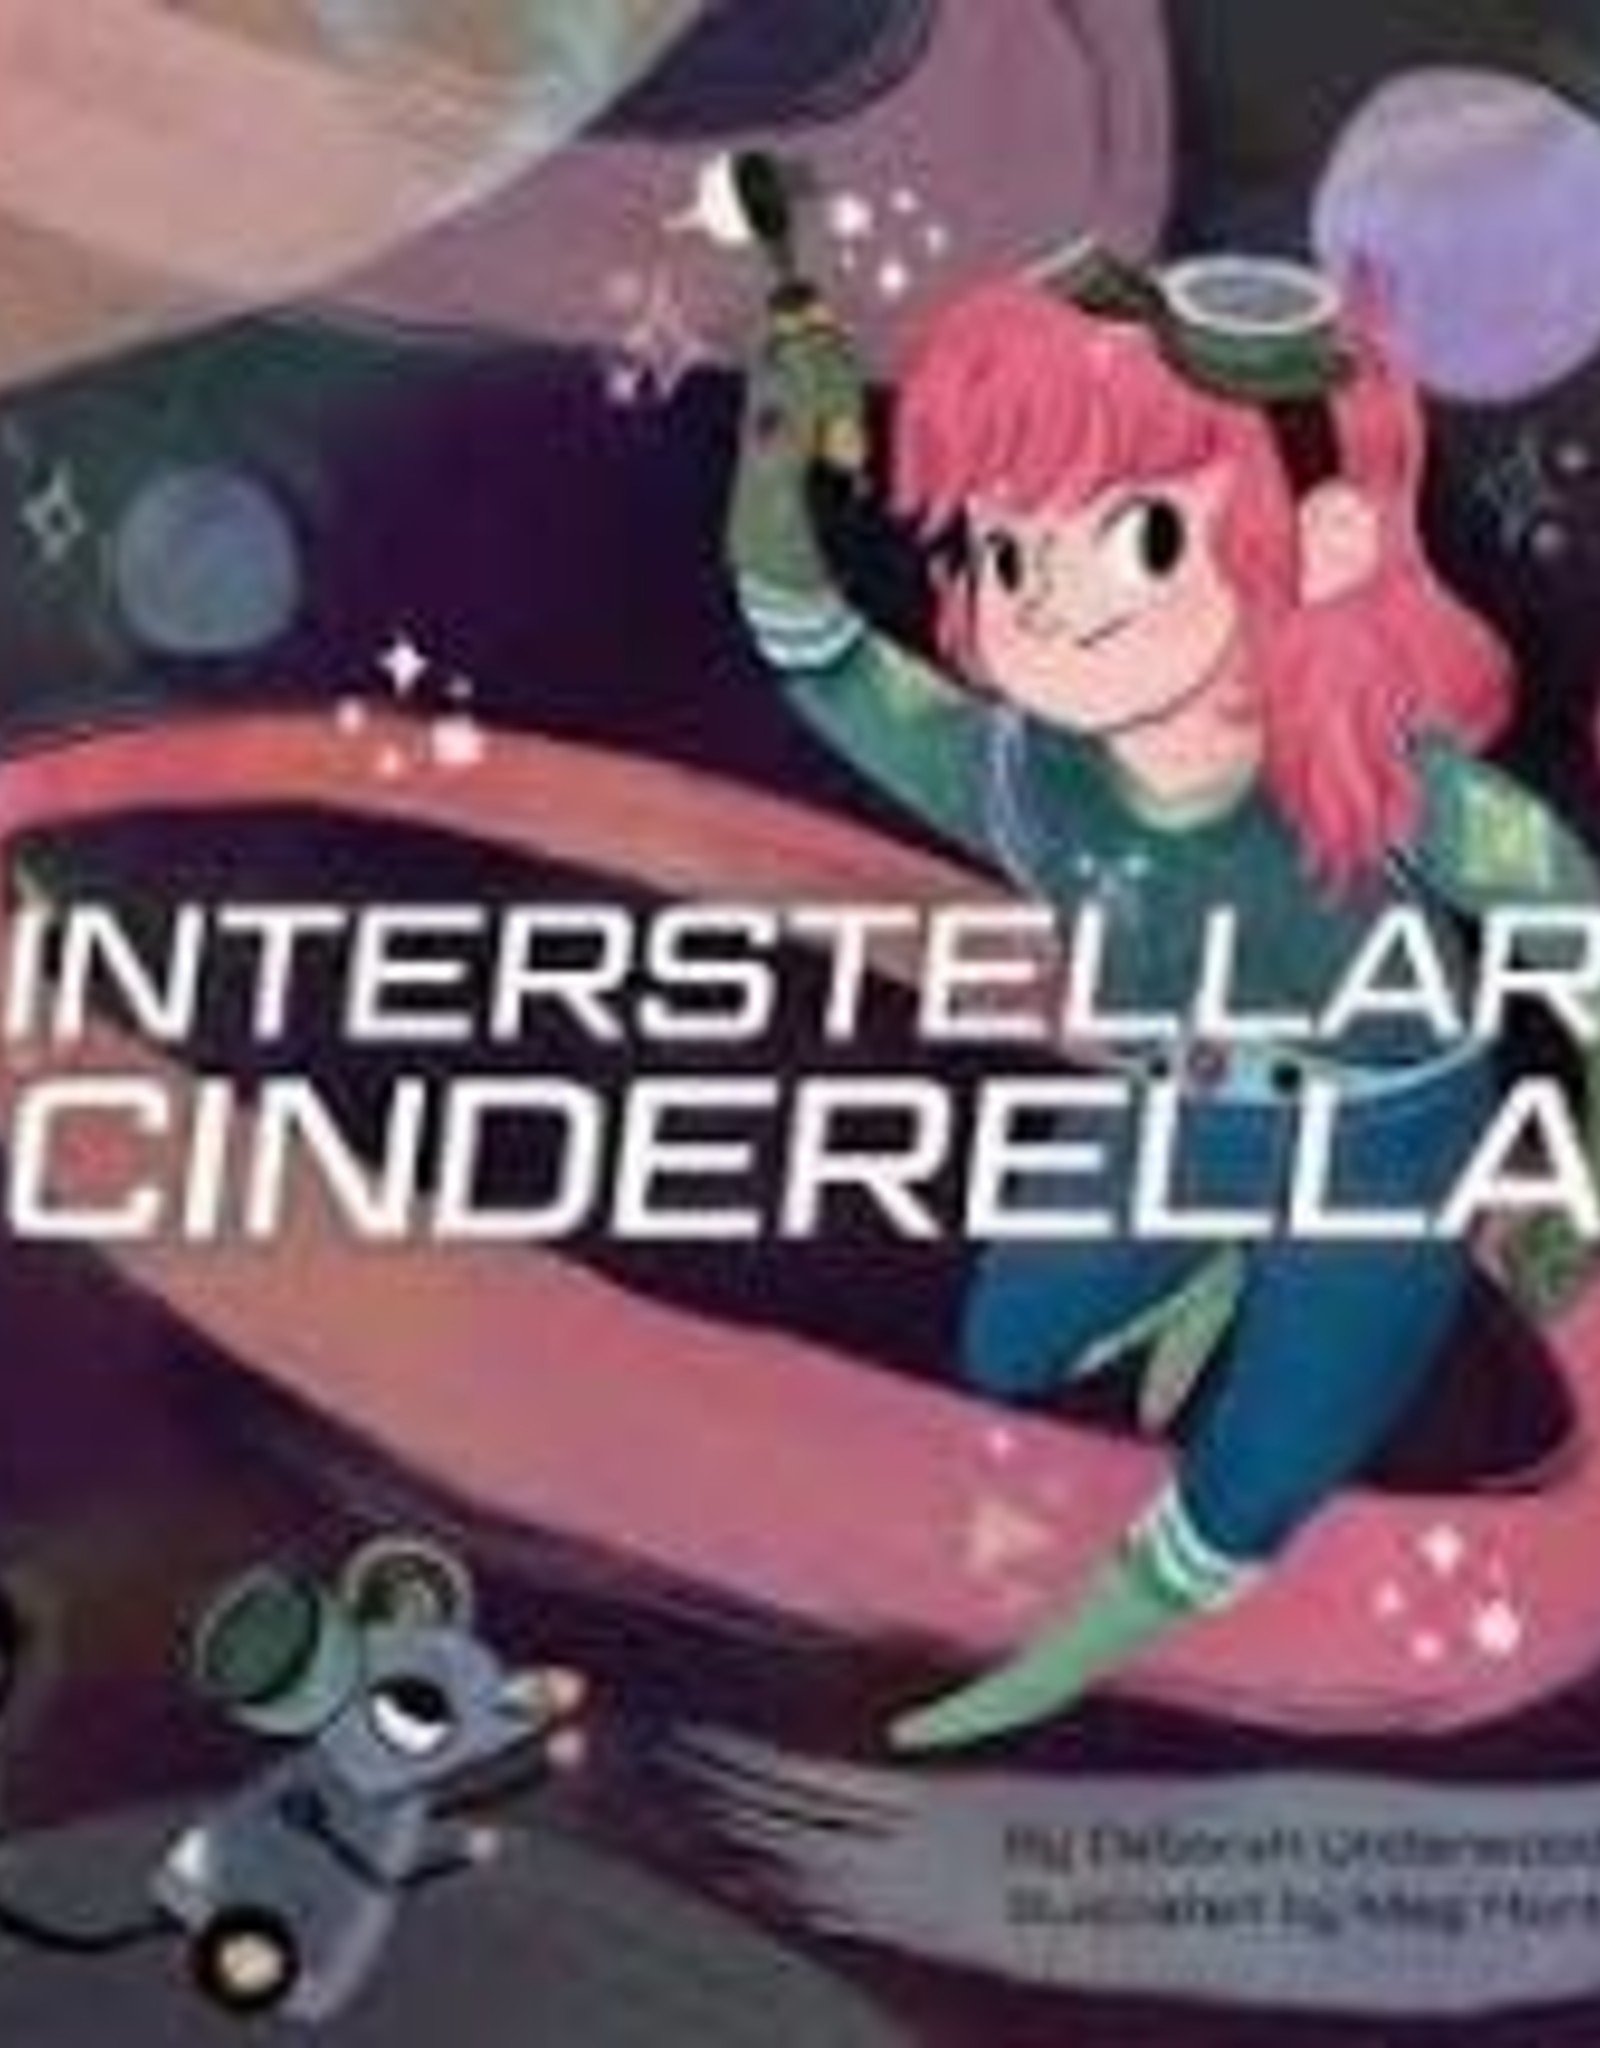 interstellar cinderella